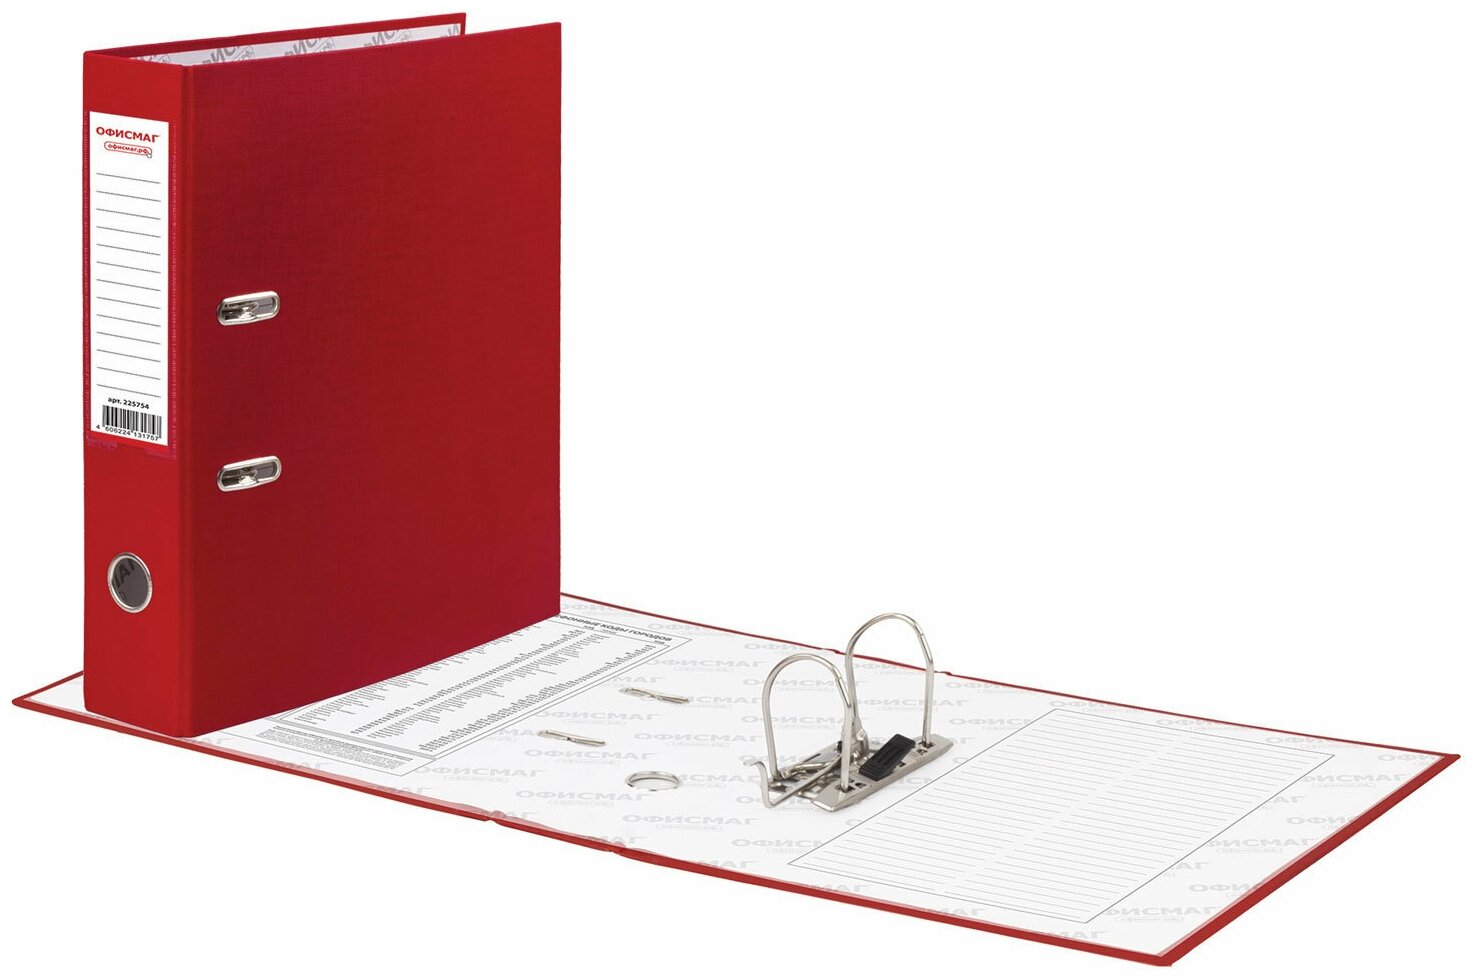 Папка-регистратор офисмаг с арочным механизмом, покрытие из ПВХ, 50 мм, красная, 25 шт - фото №6